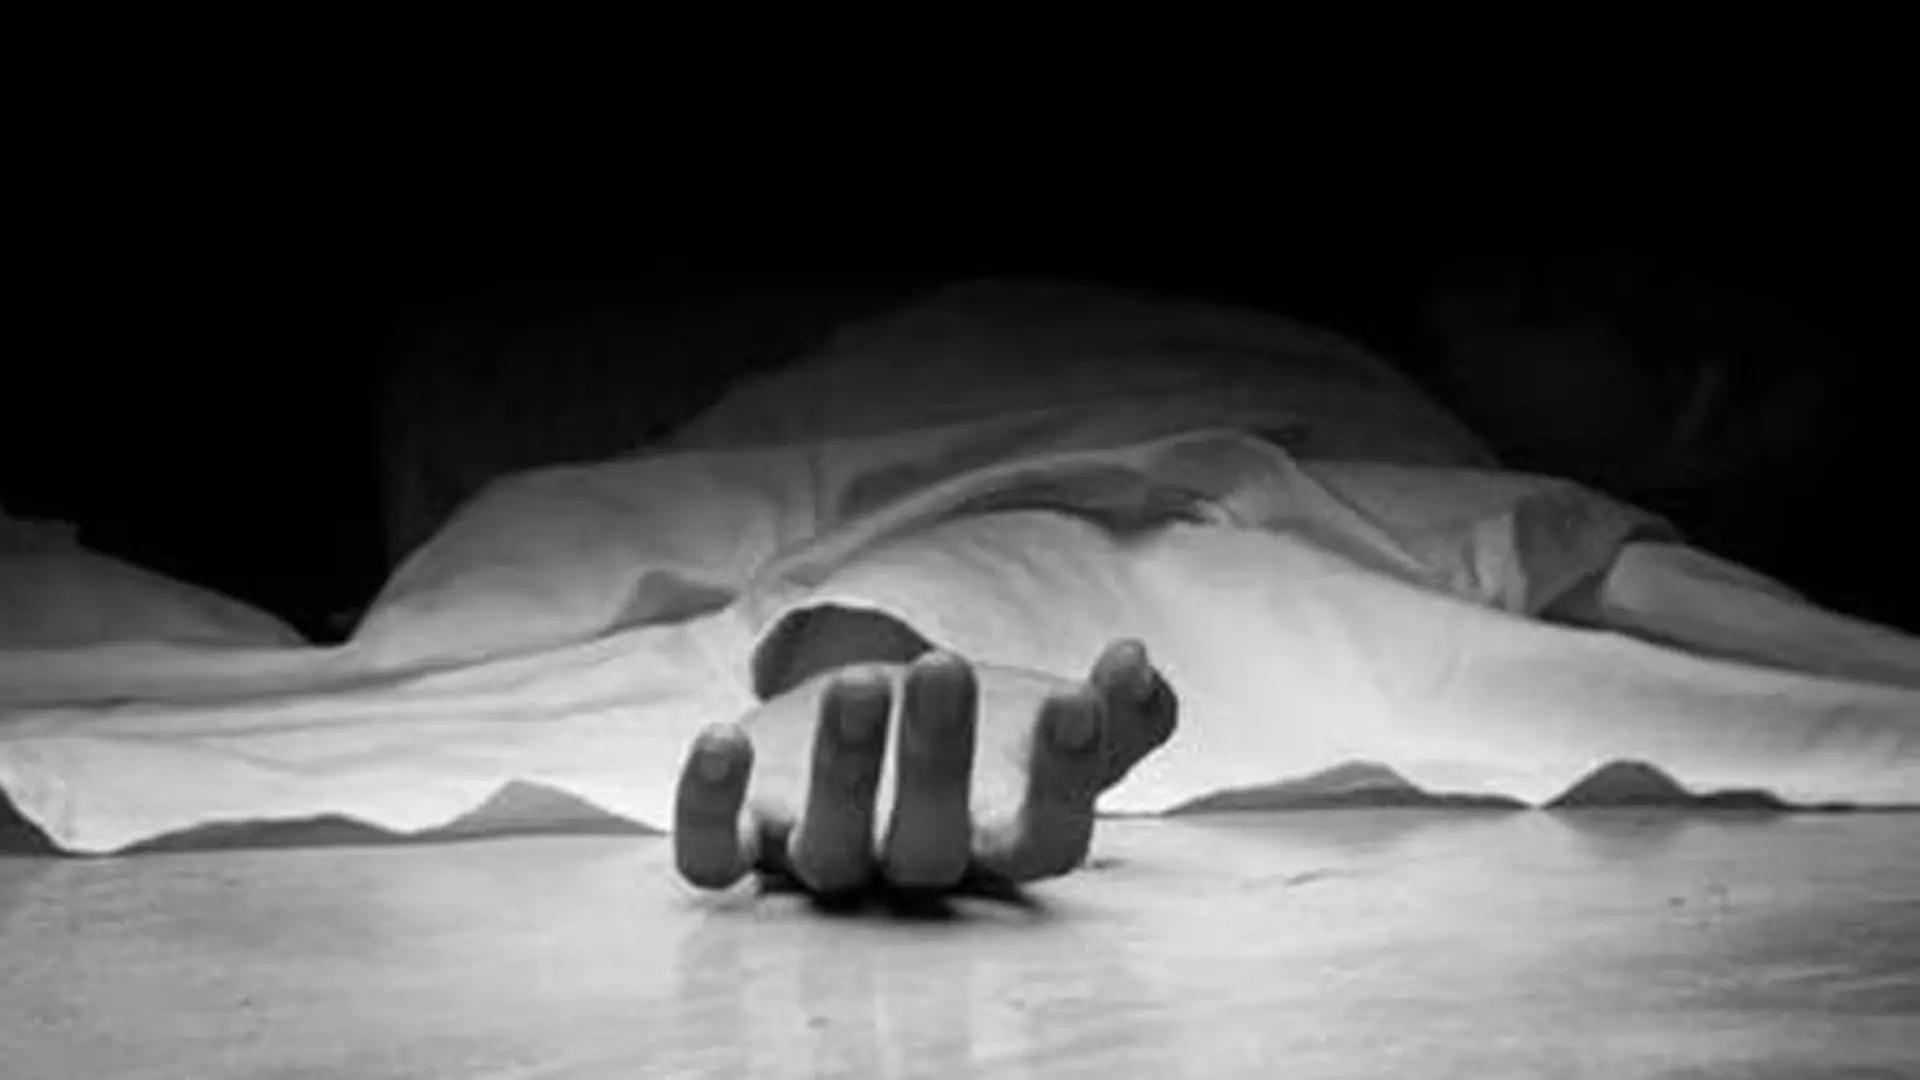 dowry system: दहेज के लिए प्रताड़ित 23 वर्षीय महिला ने मोहाली के डेरा बस्सी में आत्महत्या कर ली